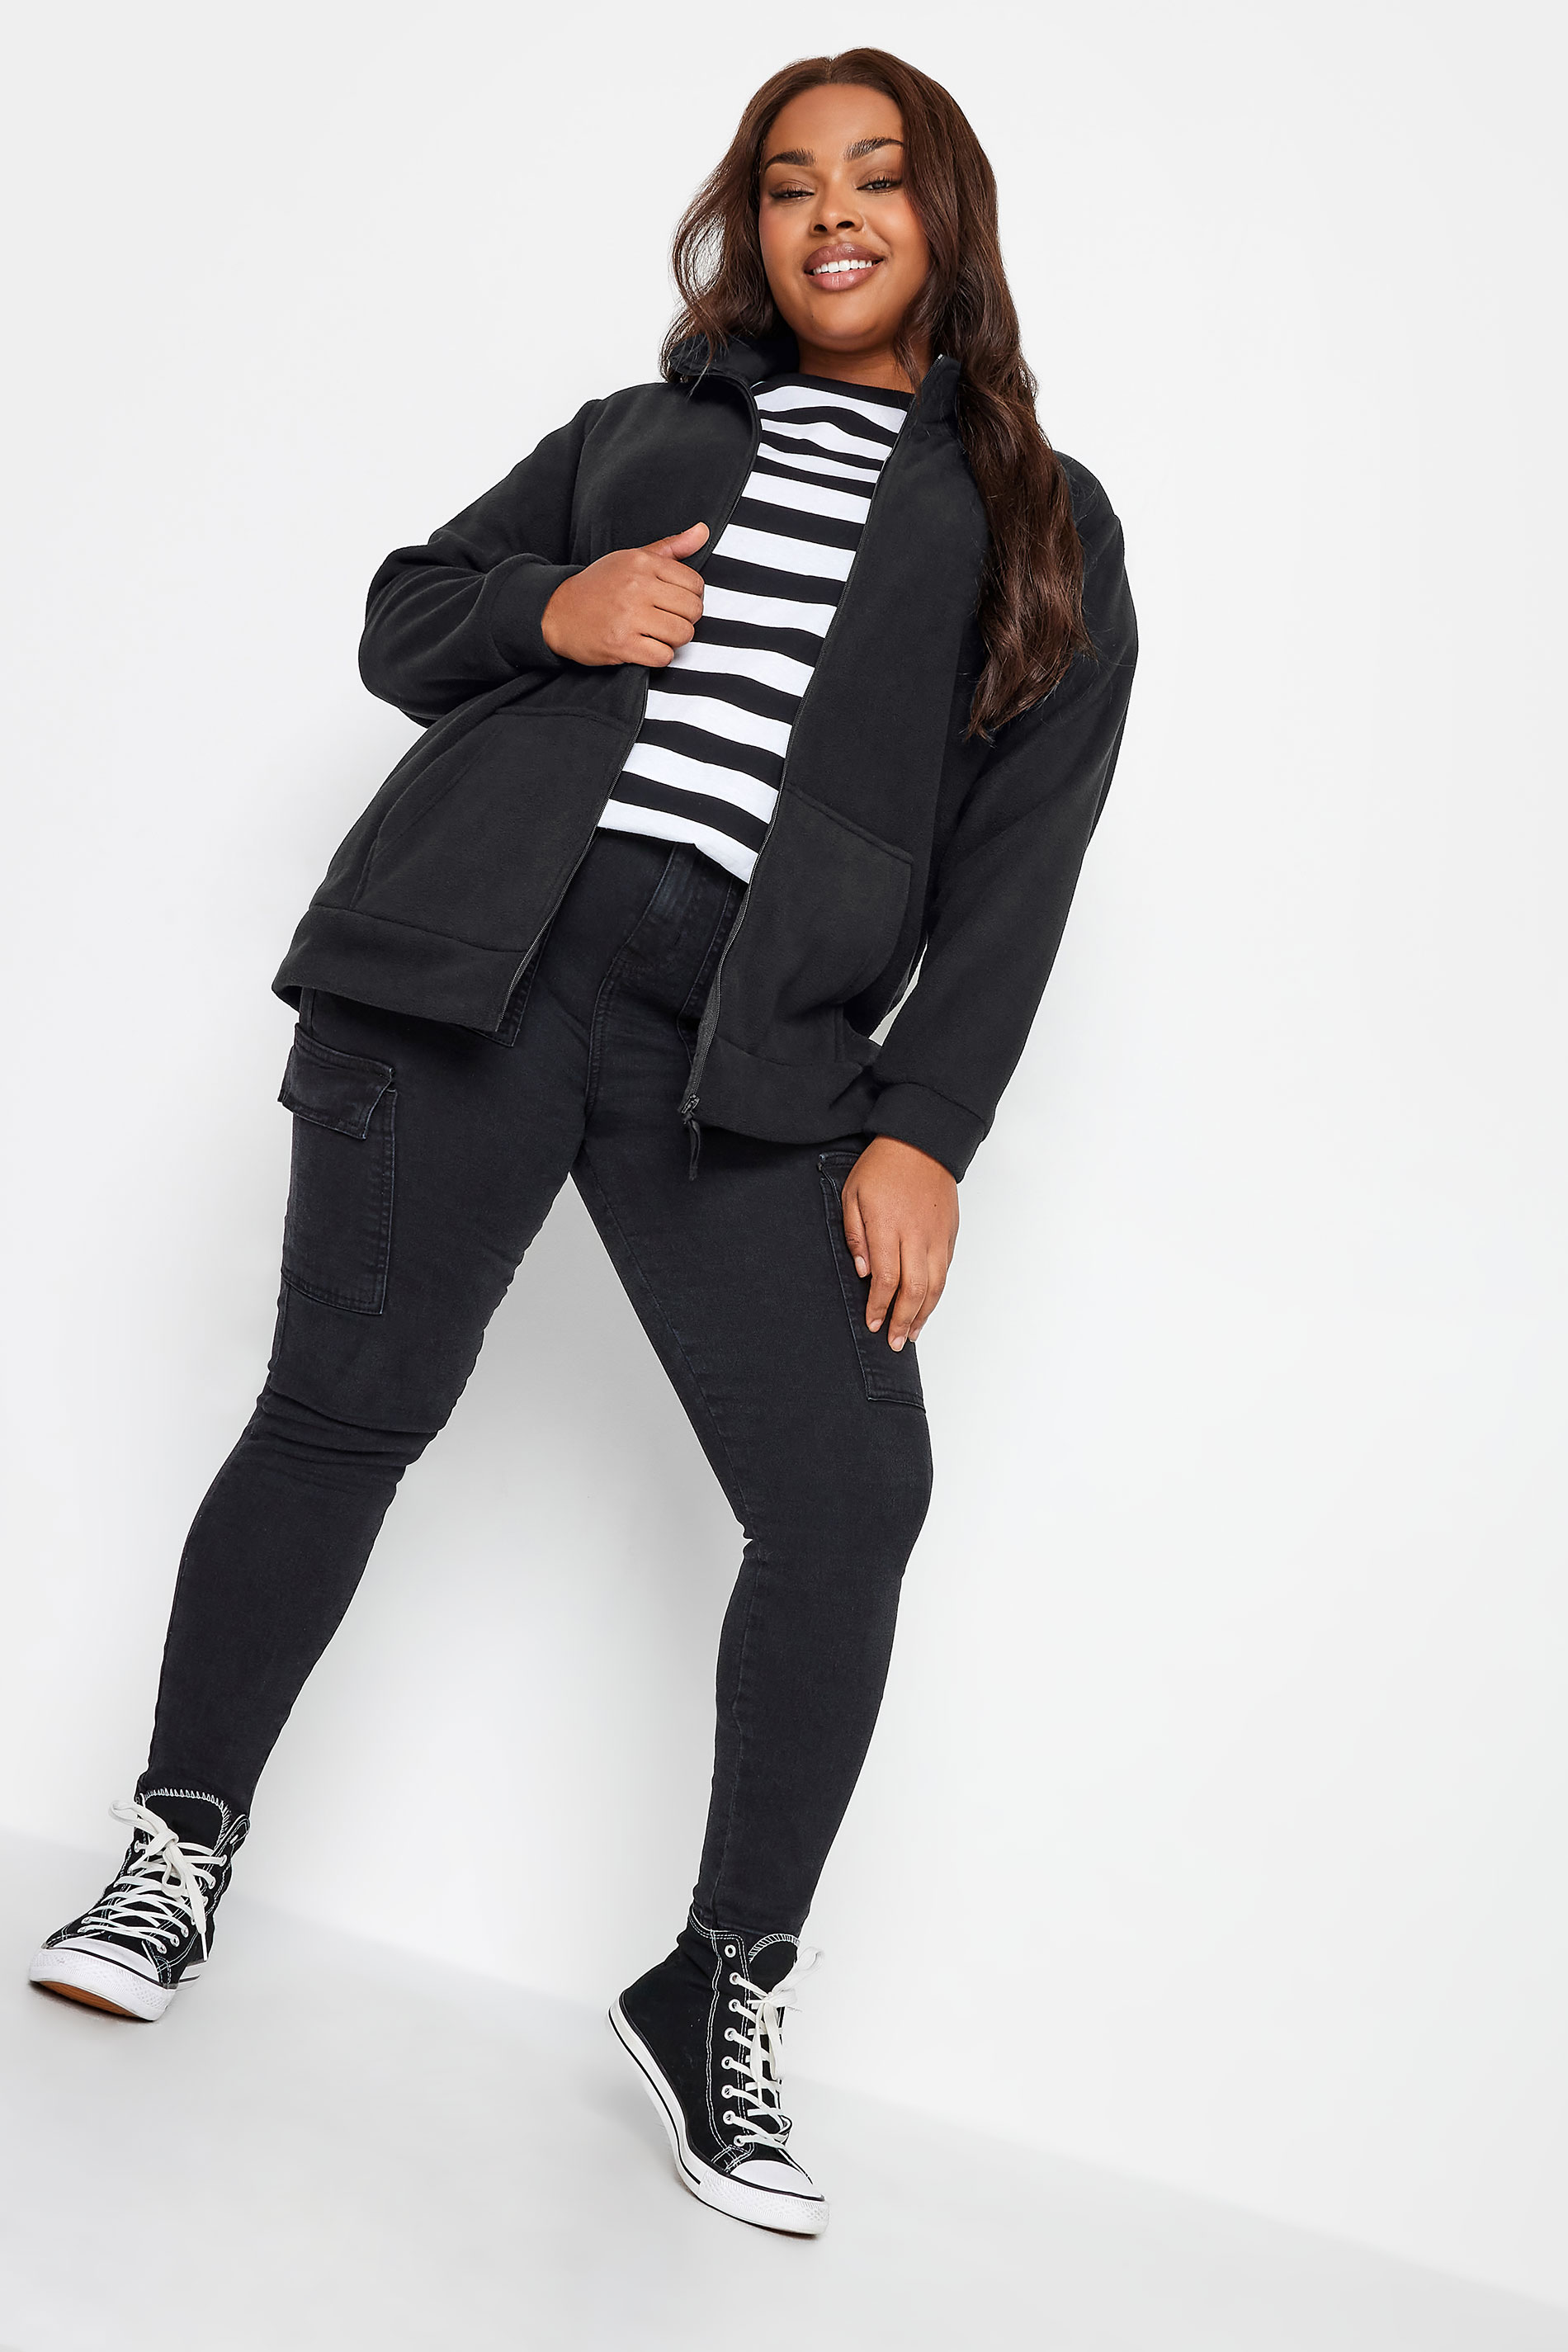 YOURS Plus Size Black Zip Fleece Jacket | Yours Clothing 3